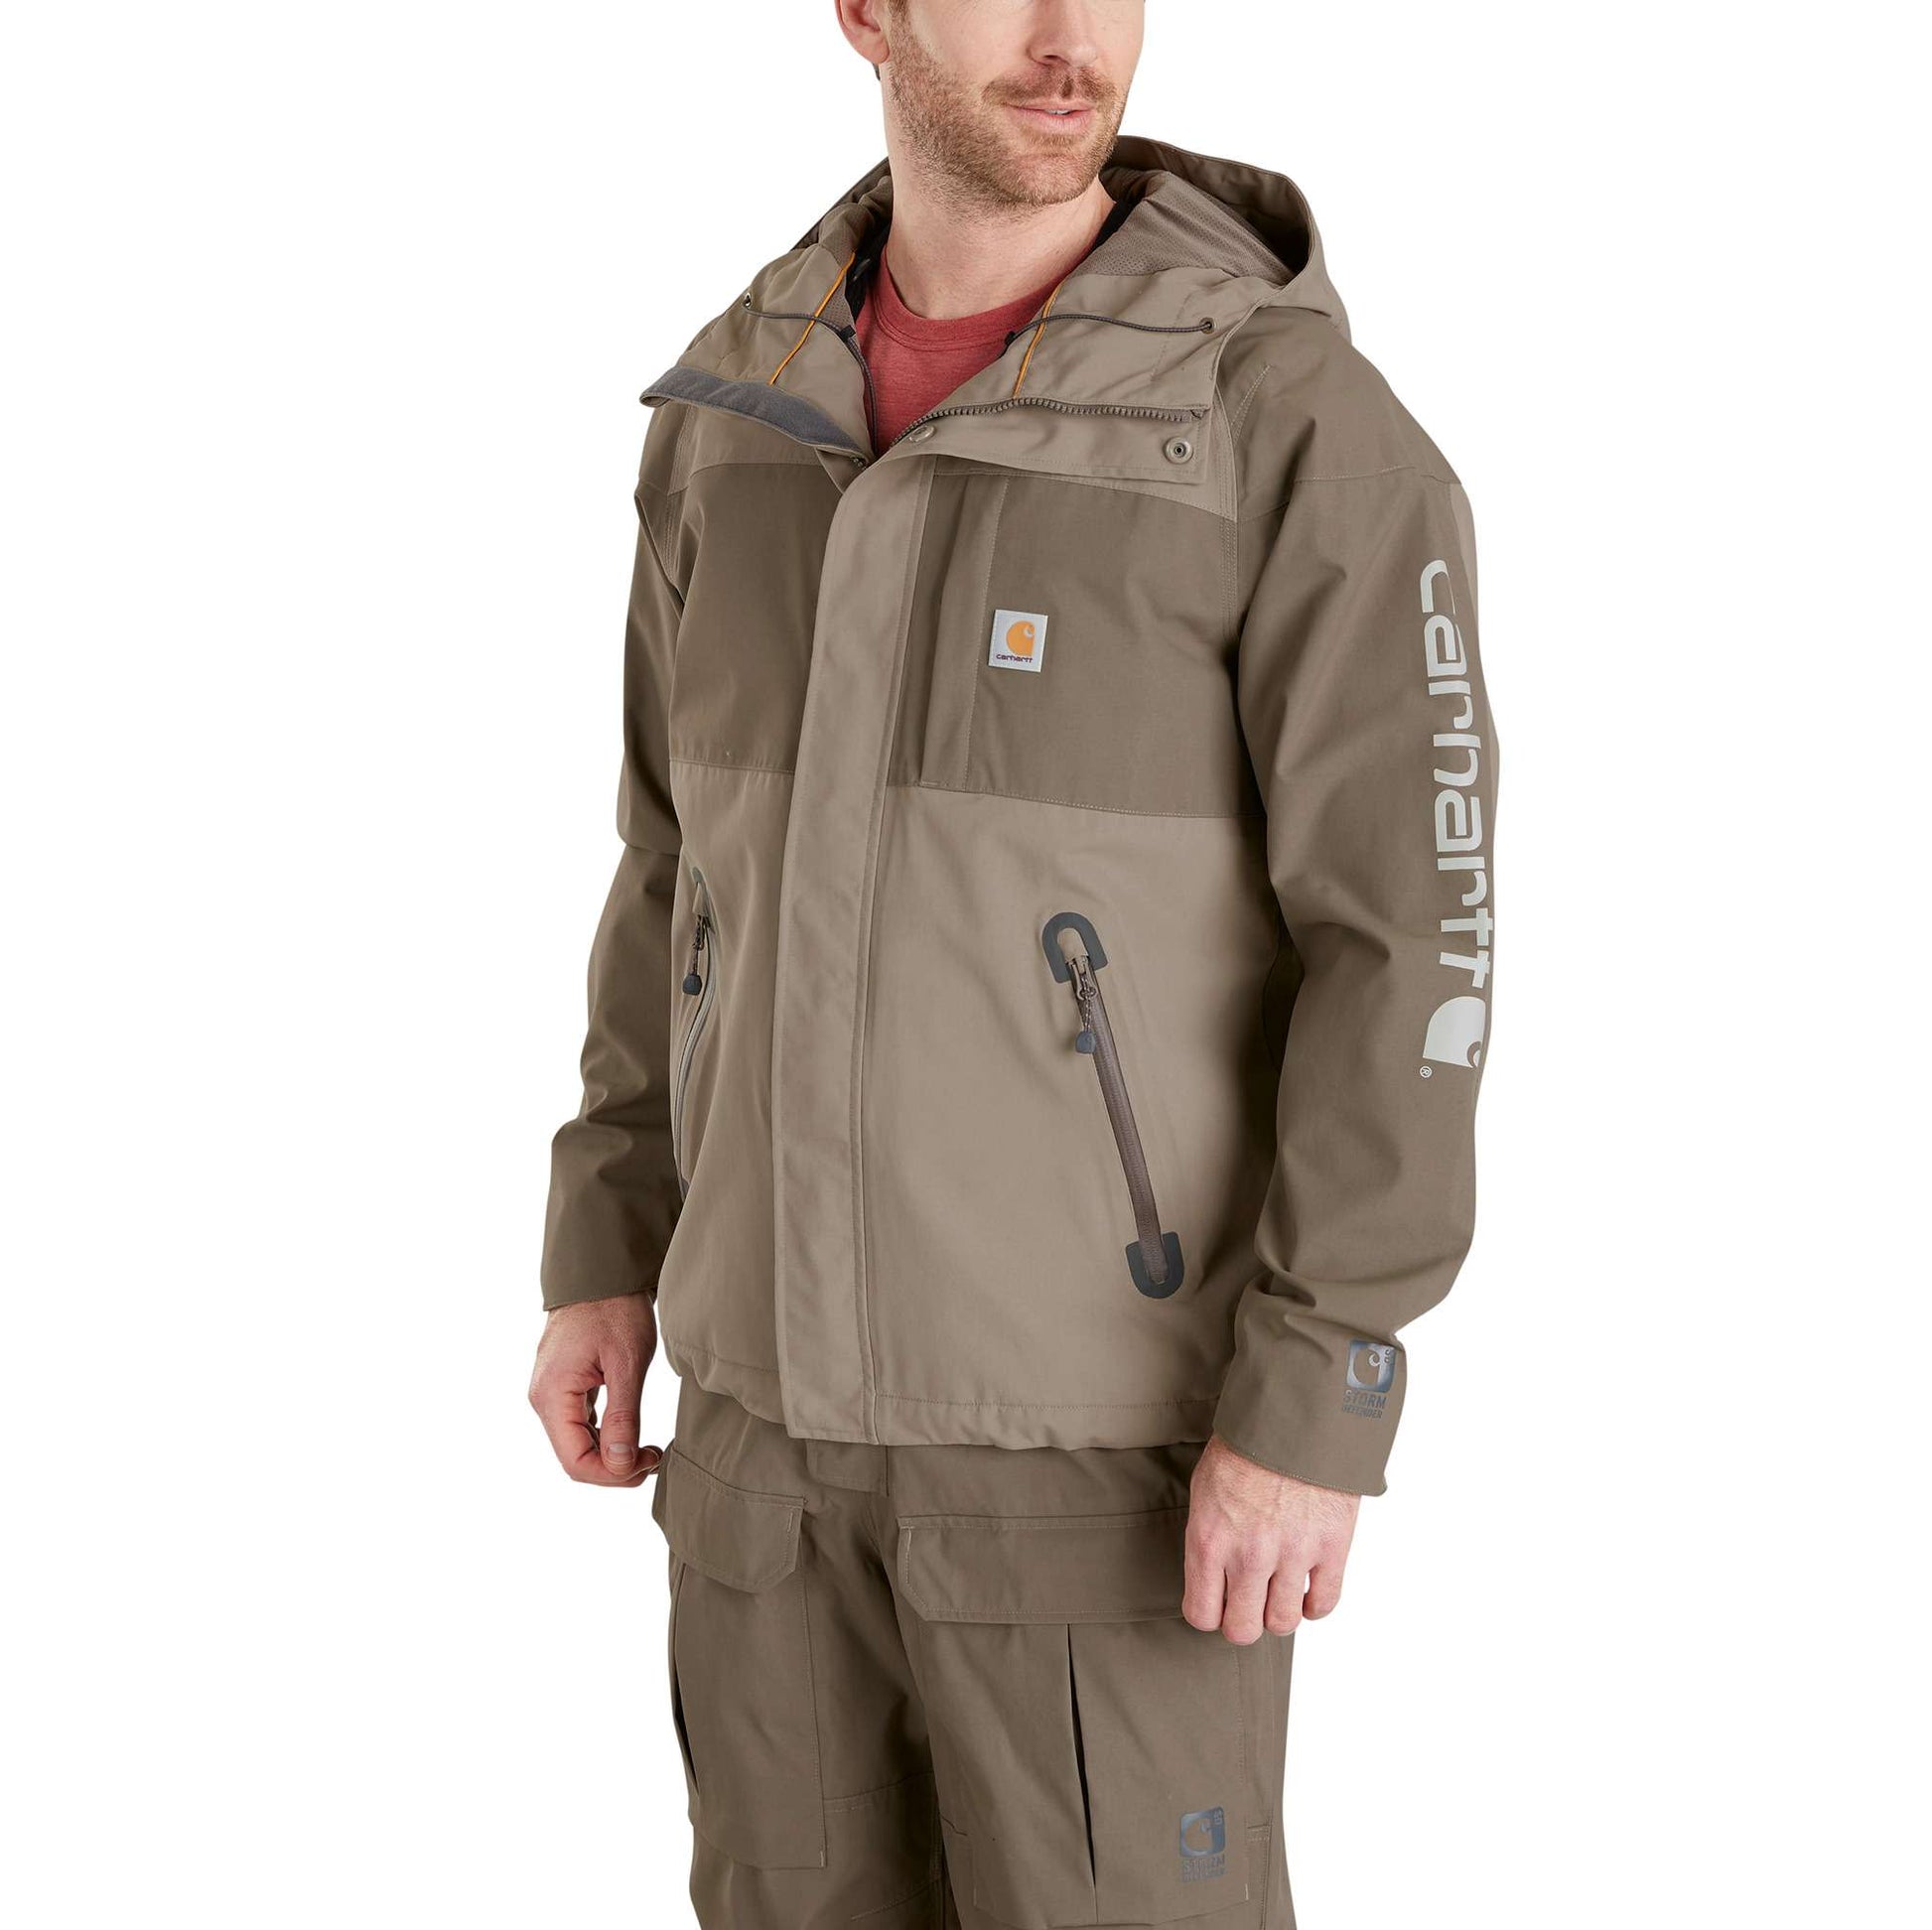 Storm Defender® Angler Jacket